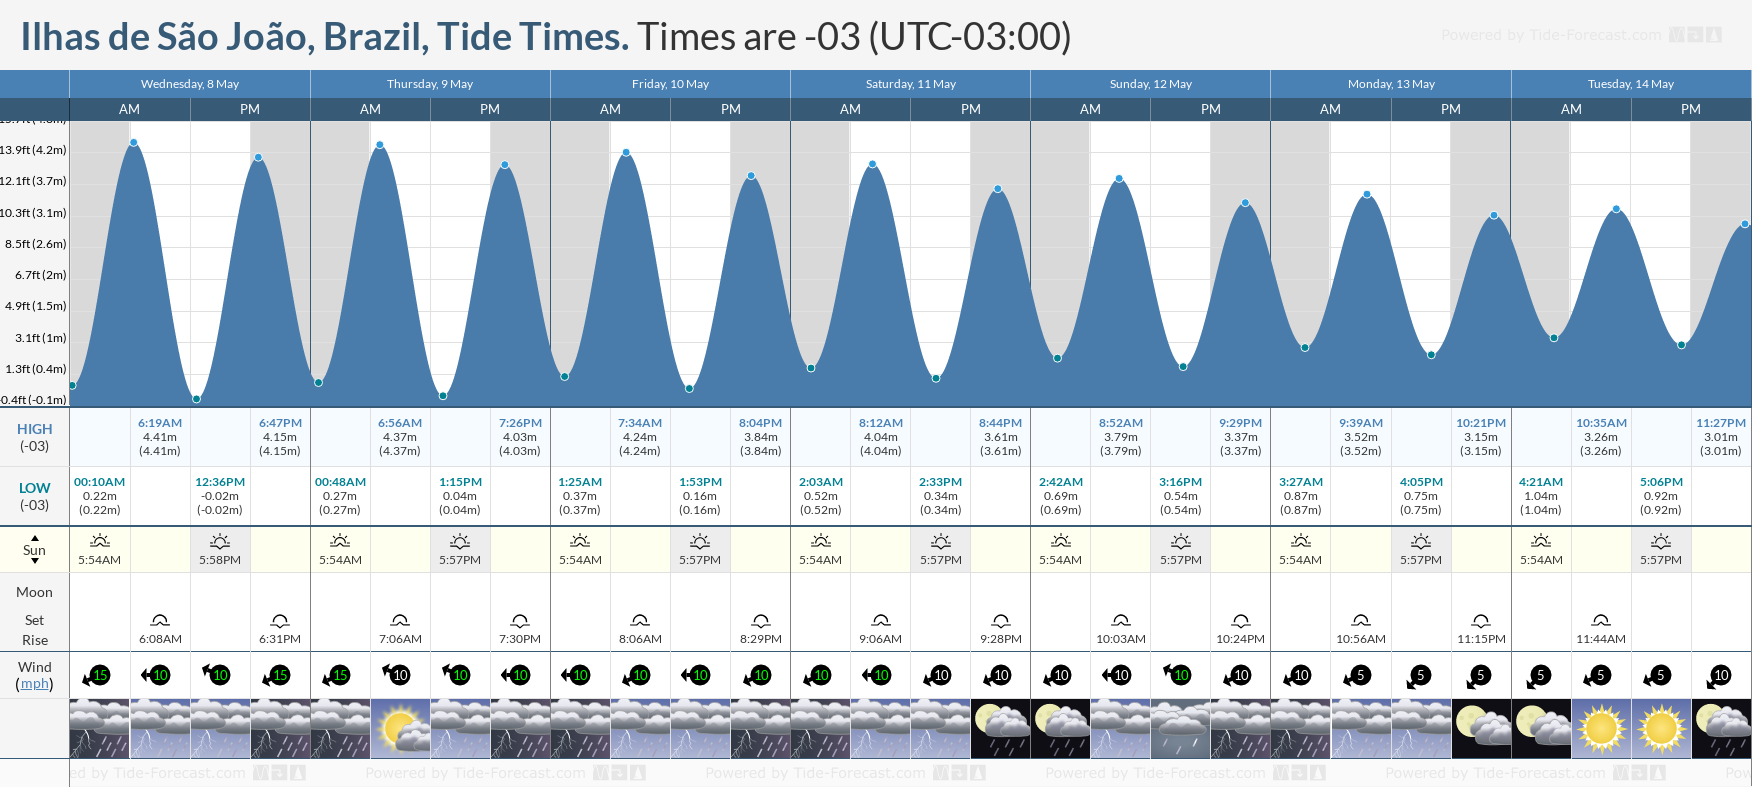 Ilhas de São João, Brazil Tide Chart including high and low tide times for the next 7 days